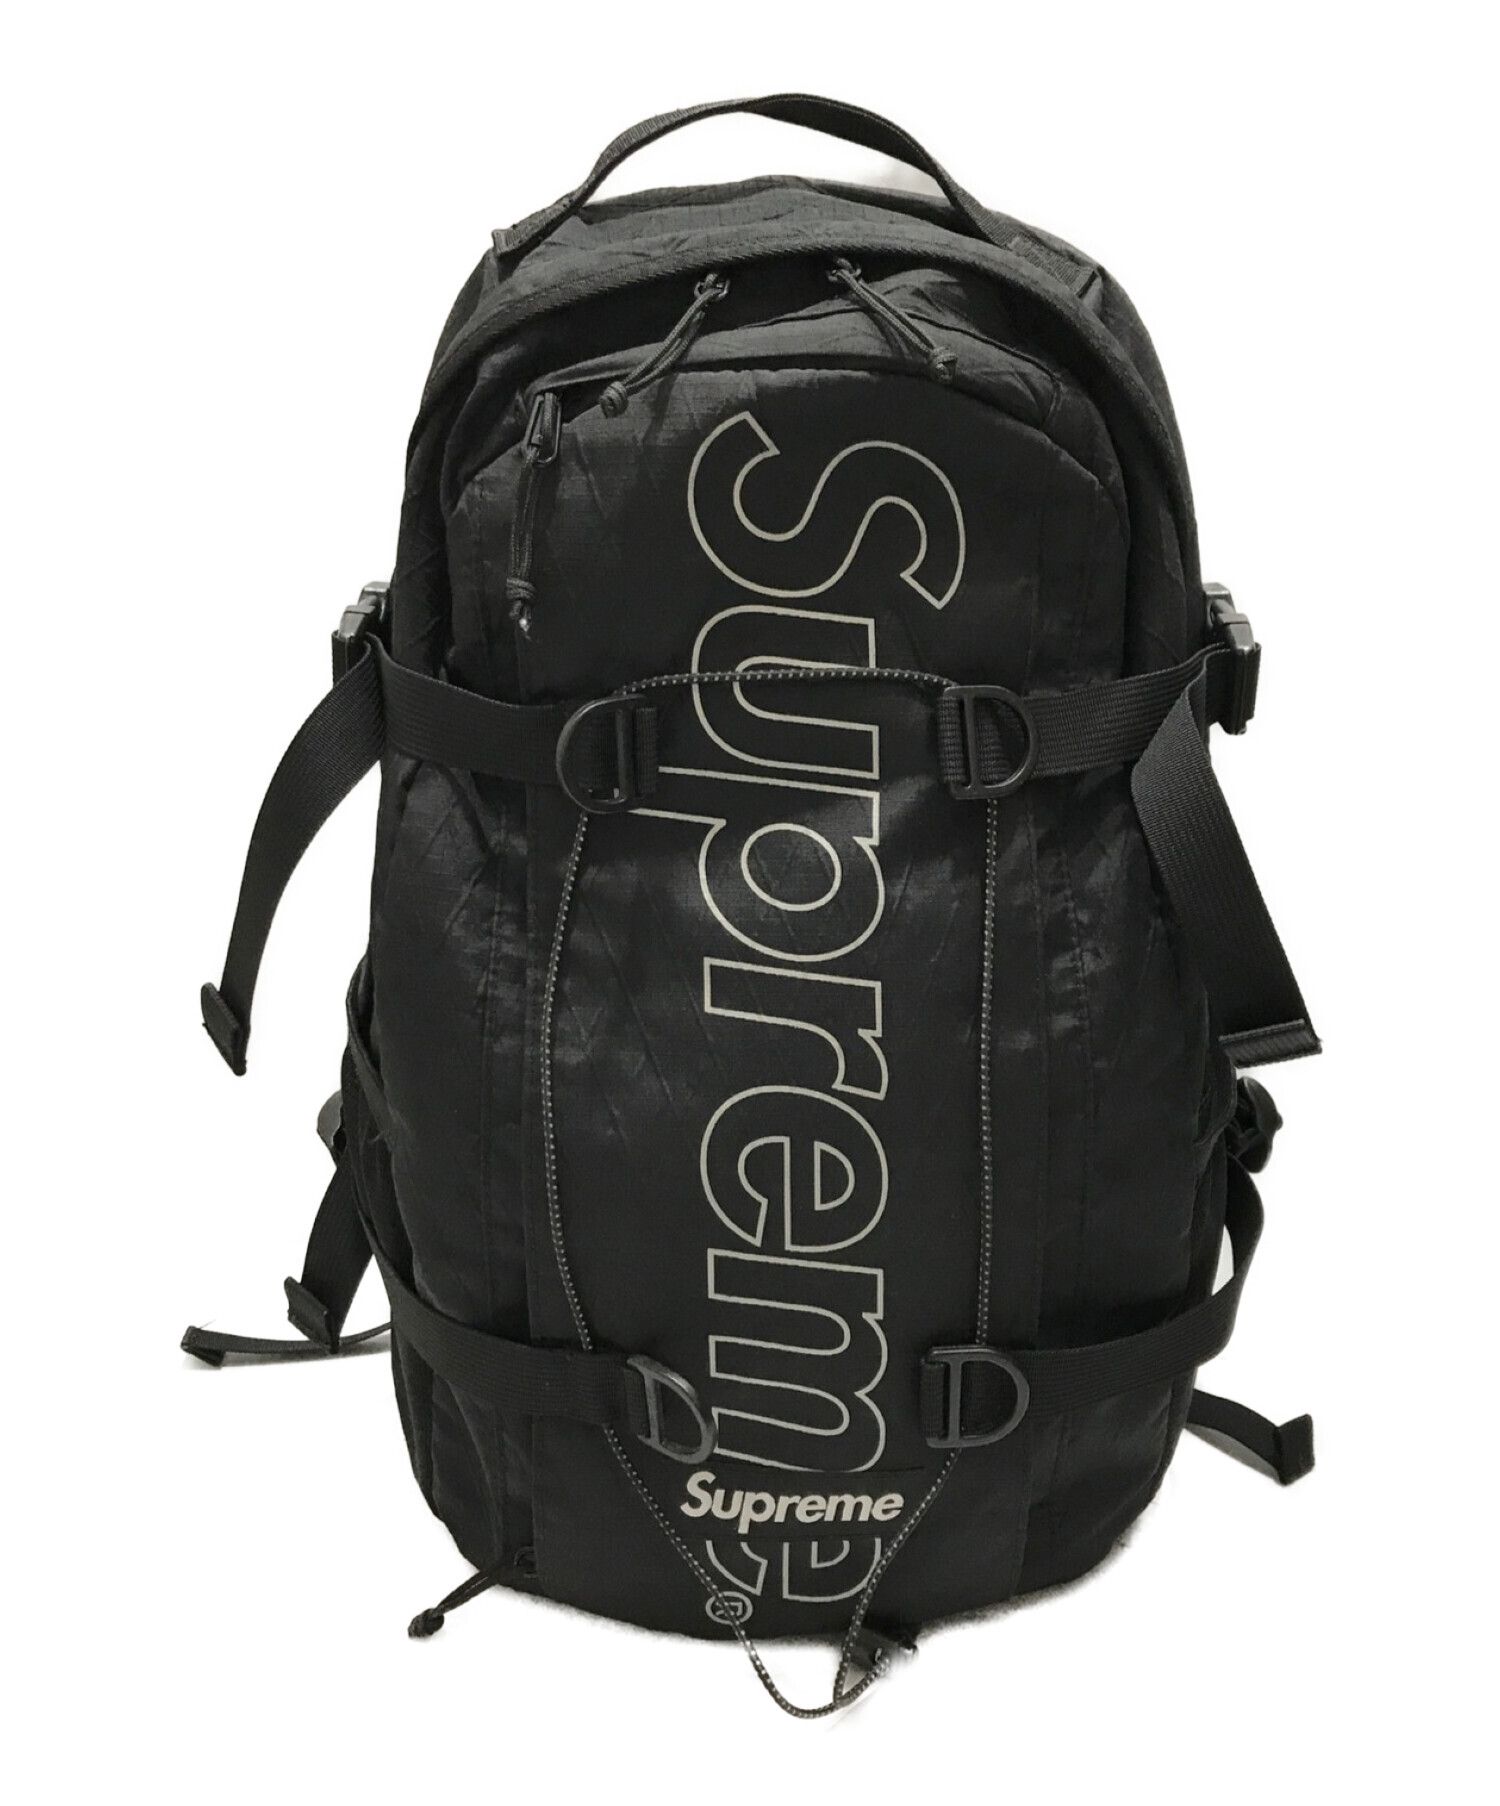 Supreme 18AW backpack black-